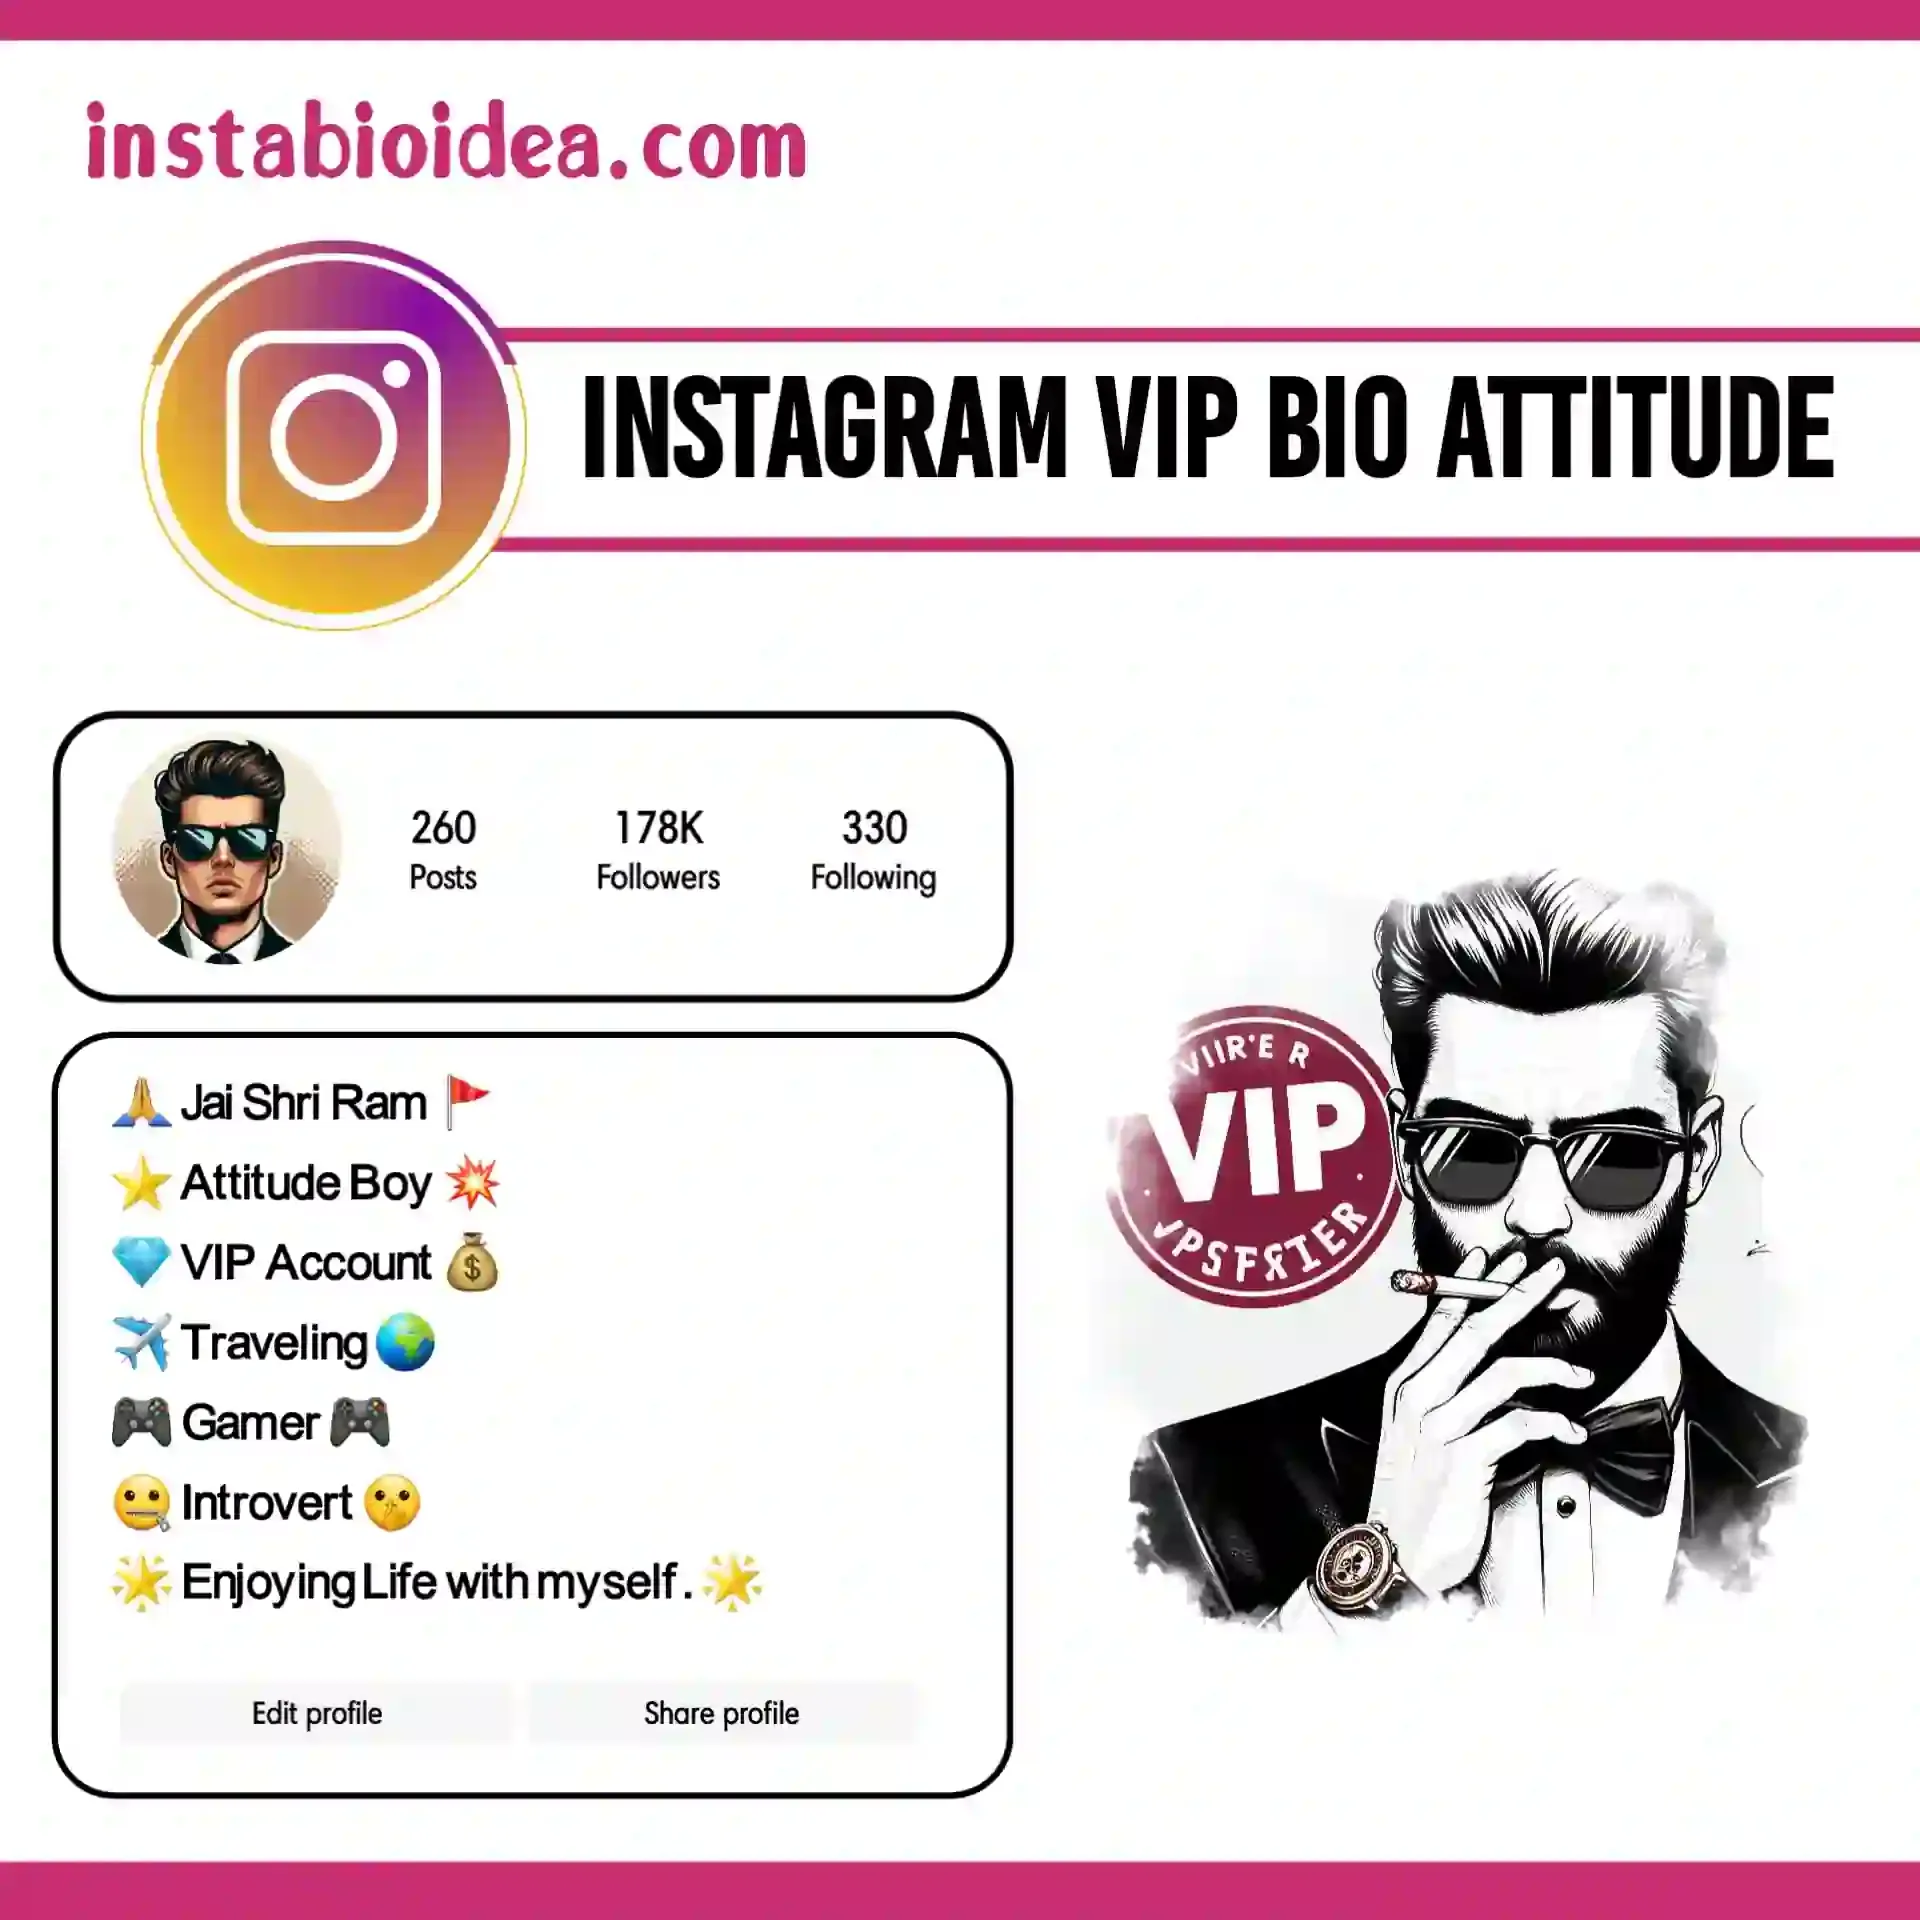 instagram vip bio attitude image